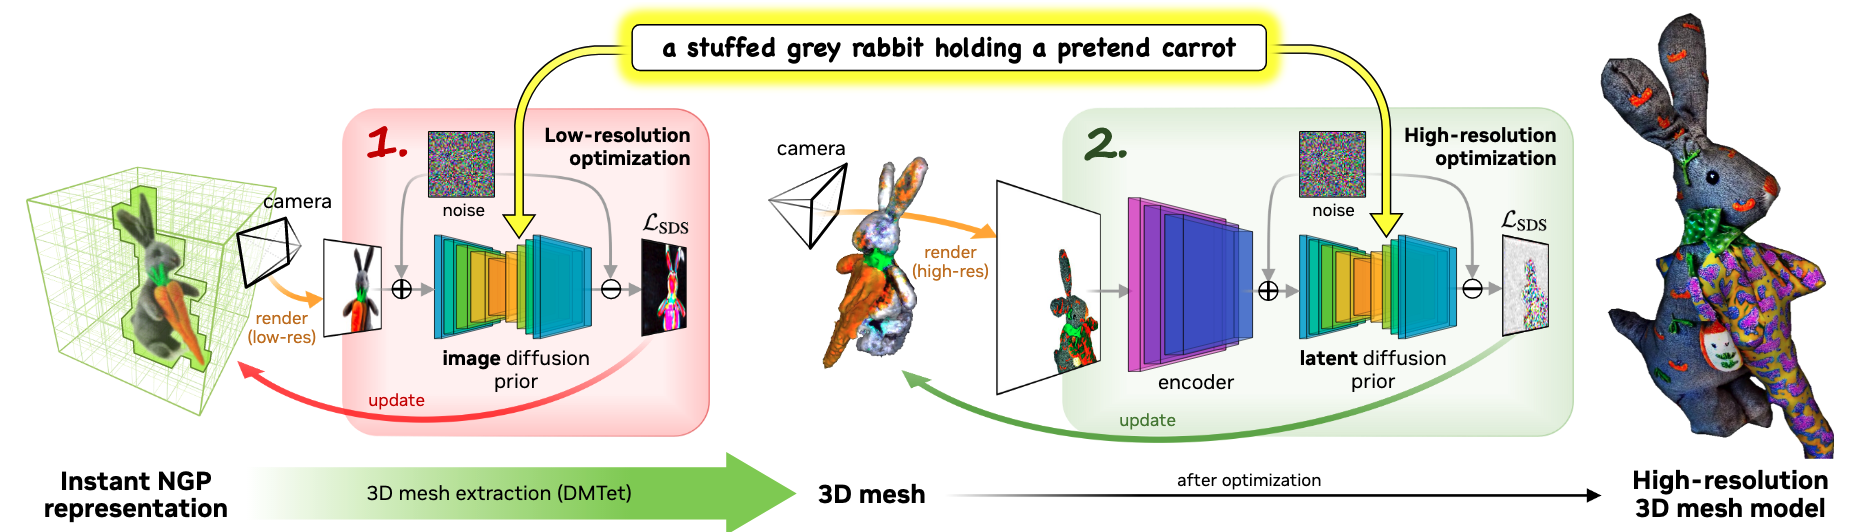 Fig 2. Magic3D概述. 我们以从粗到精的方式从输入文本提示生成高分辨率3D内容。在第一阶段，我们利用低分辨率扩散先验并优化神经场表示(颜色，密度和法向场)来获得粗模型。我们进一步从粗模型的密度场和颜色场中微分提取纹理三维网格。然后我们用一个高分辨率的潜在扩散模型对它进行微调。优化后，我们的模型生成具有详细纹理的高质量3D网格。